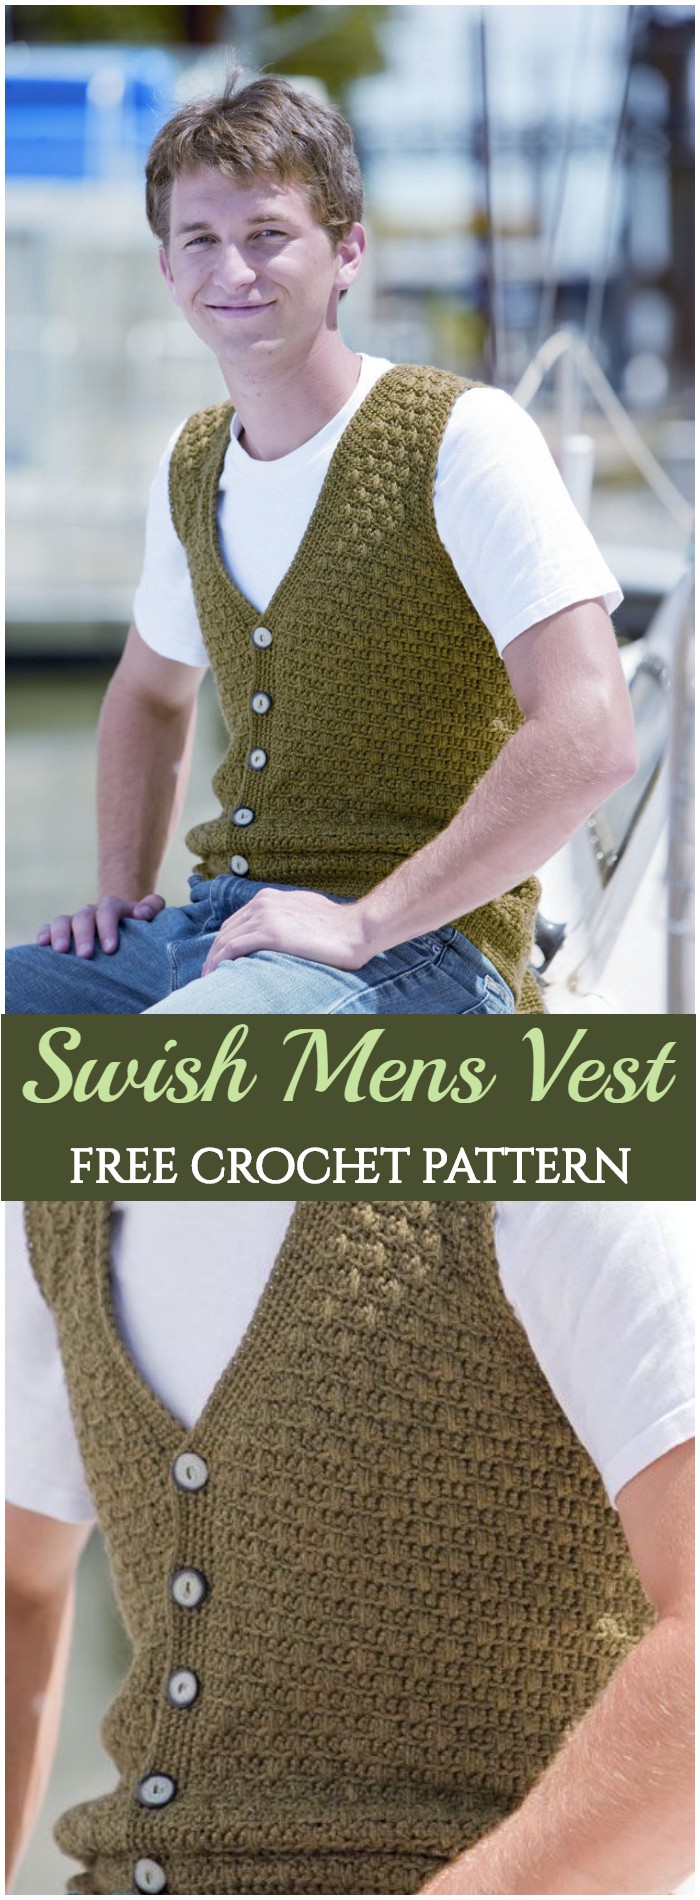 Crochet Swish Men's Vest